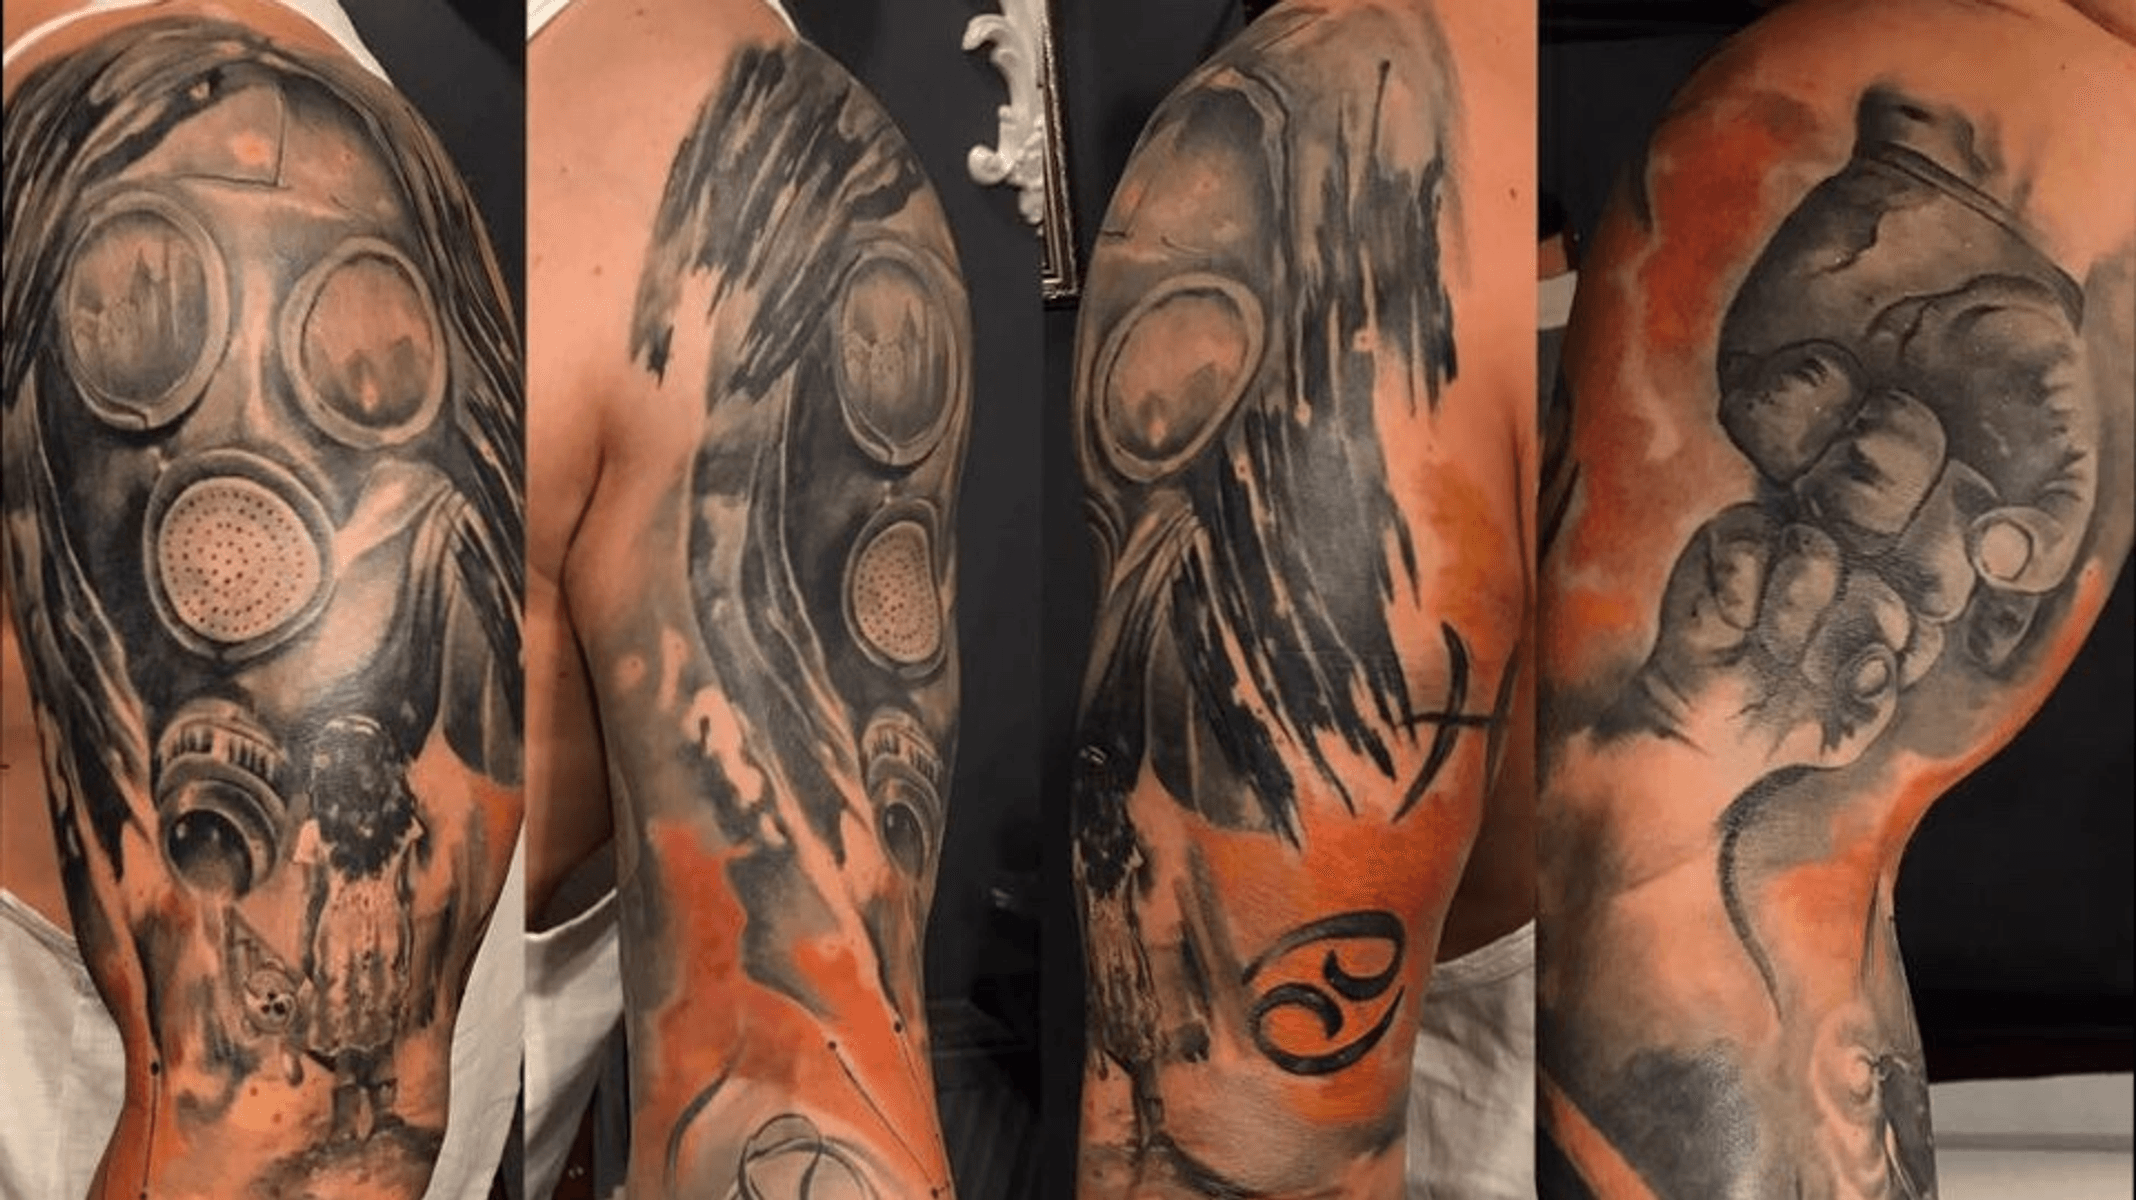 2. Ink Spot Tattoo - wide 4